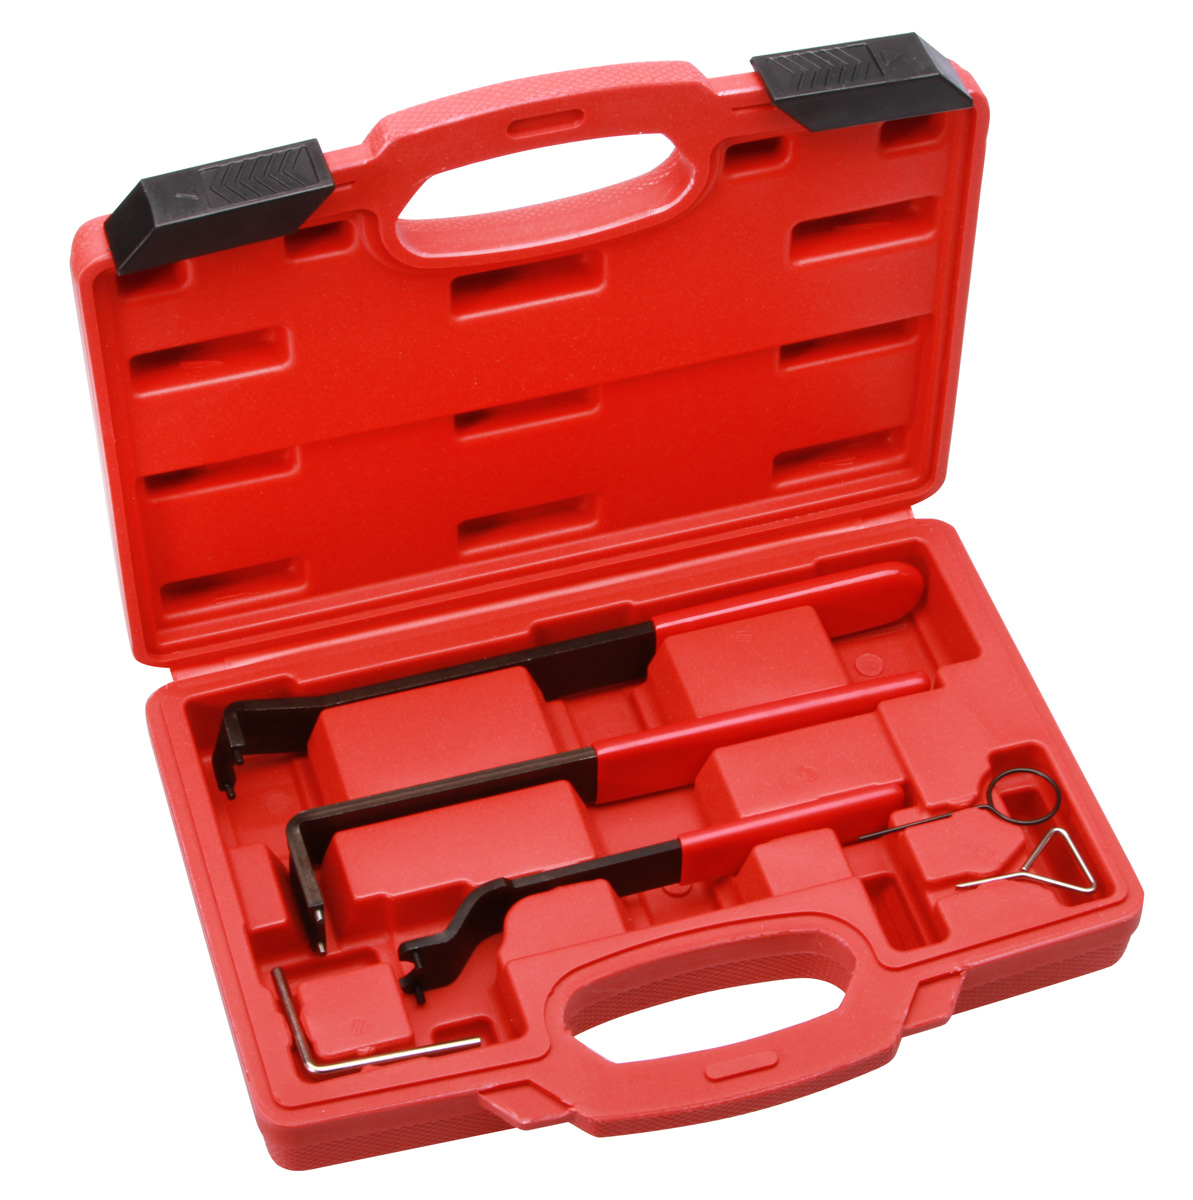 Gegenhalteschlüssel Schlüssel Gegenhalter + VAG Zahnriemen Spezial Werkzeug